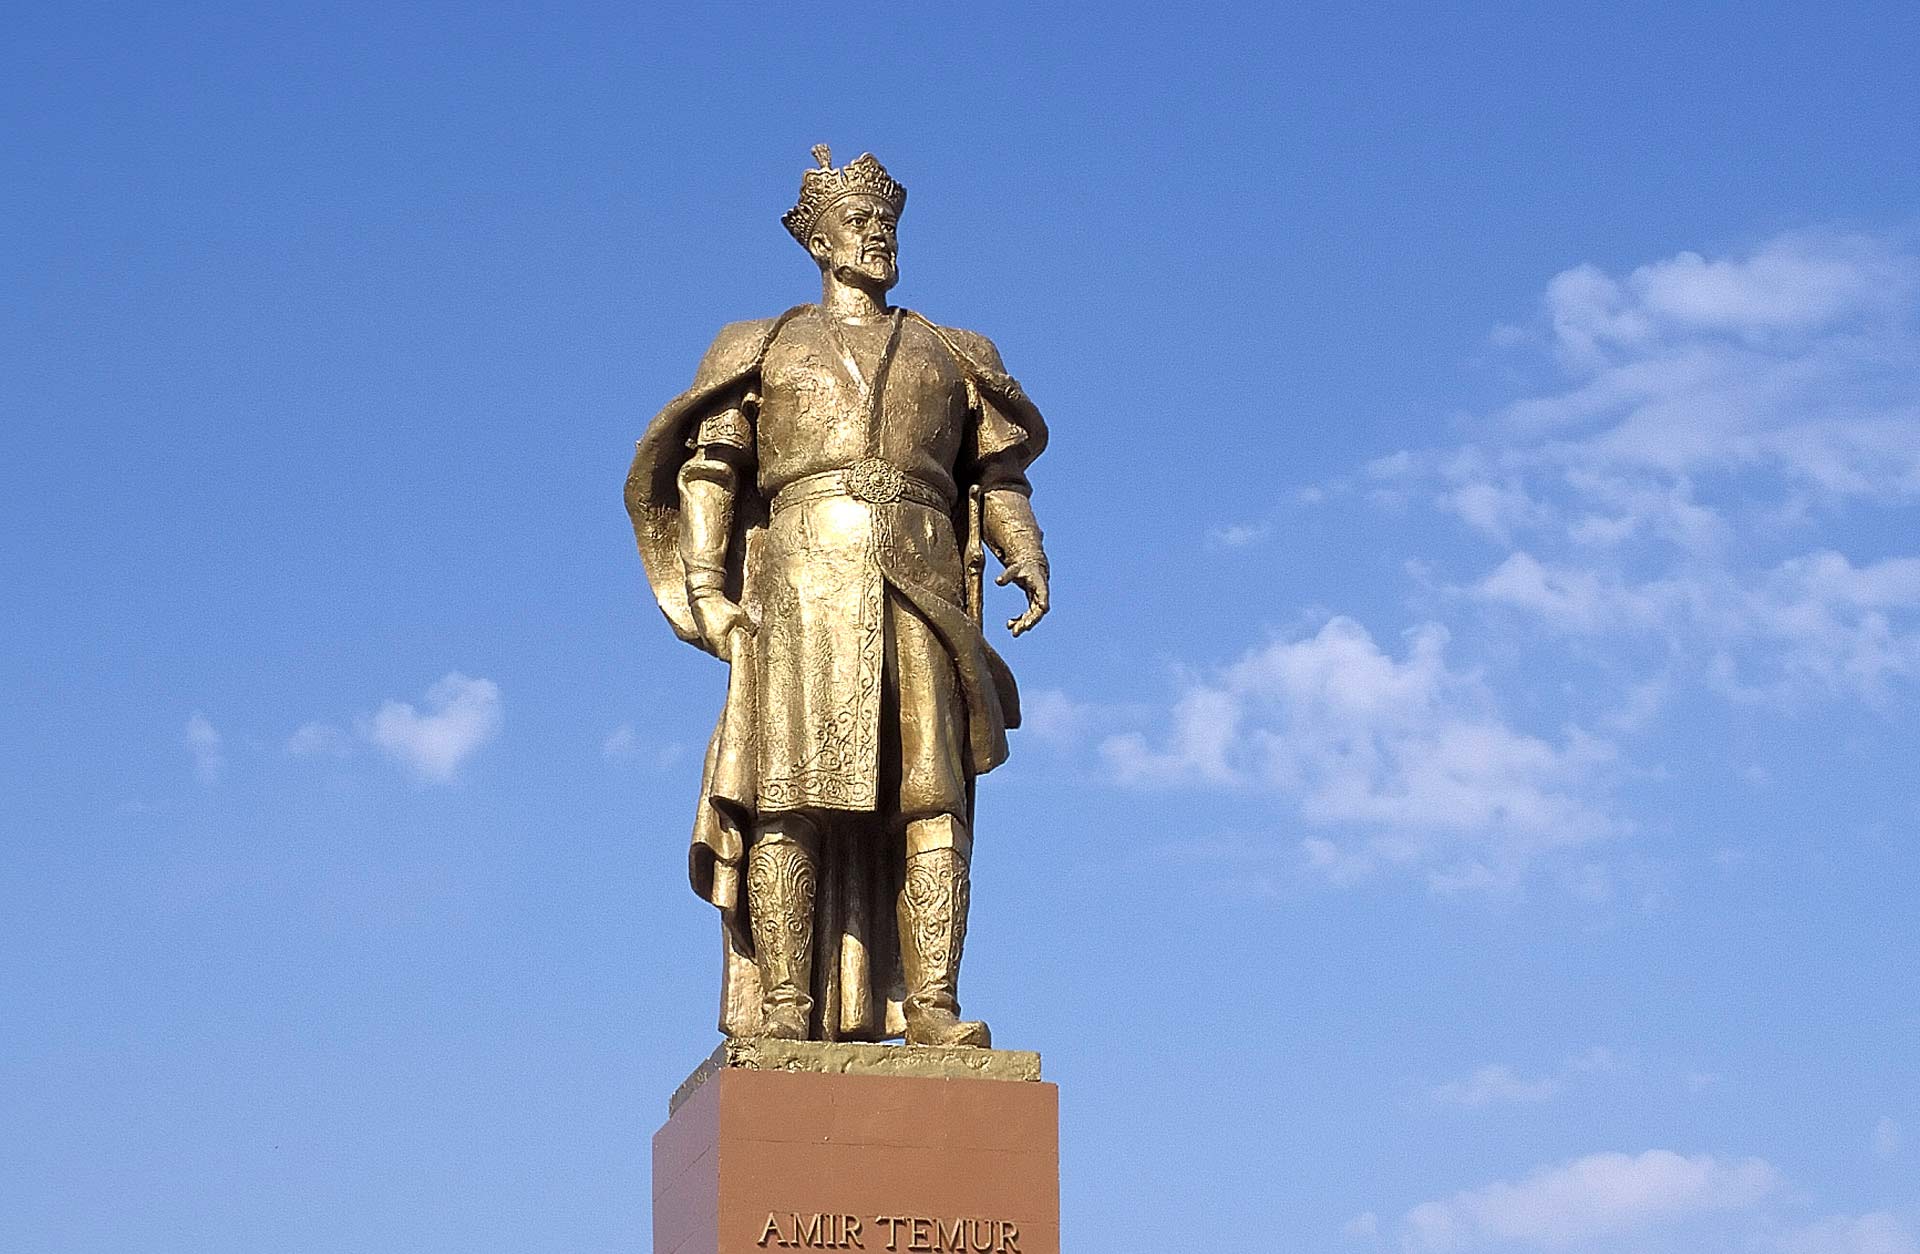 Amir Timur Monument, Shakhrisyabz, Qashqadaryo, Uzbekistan